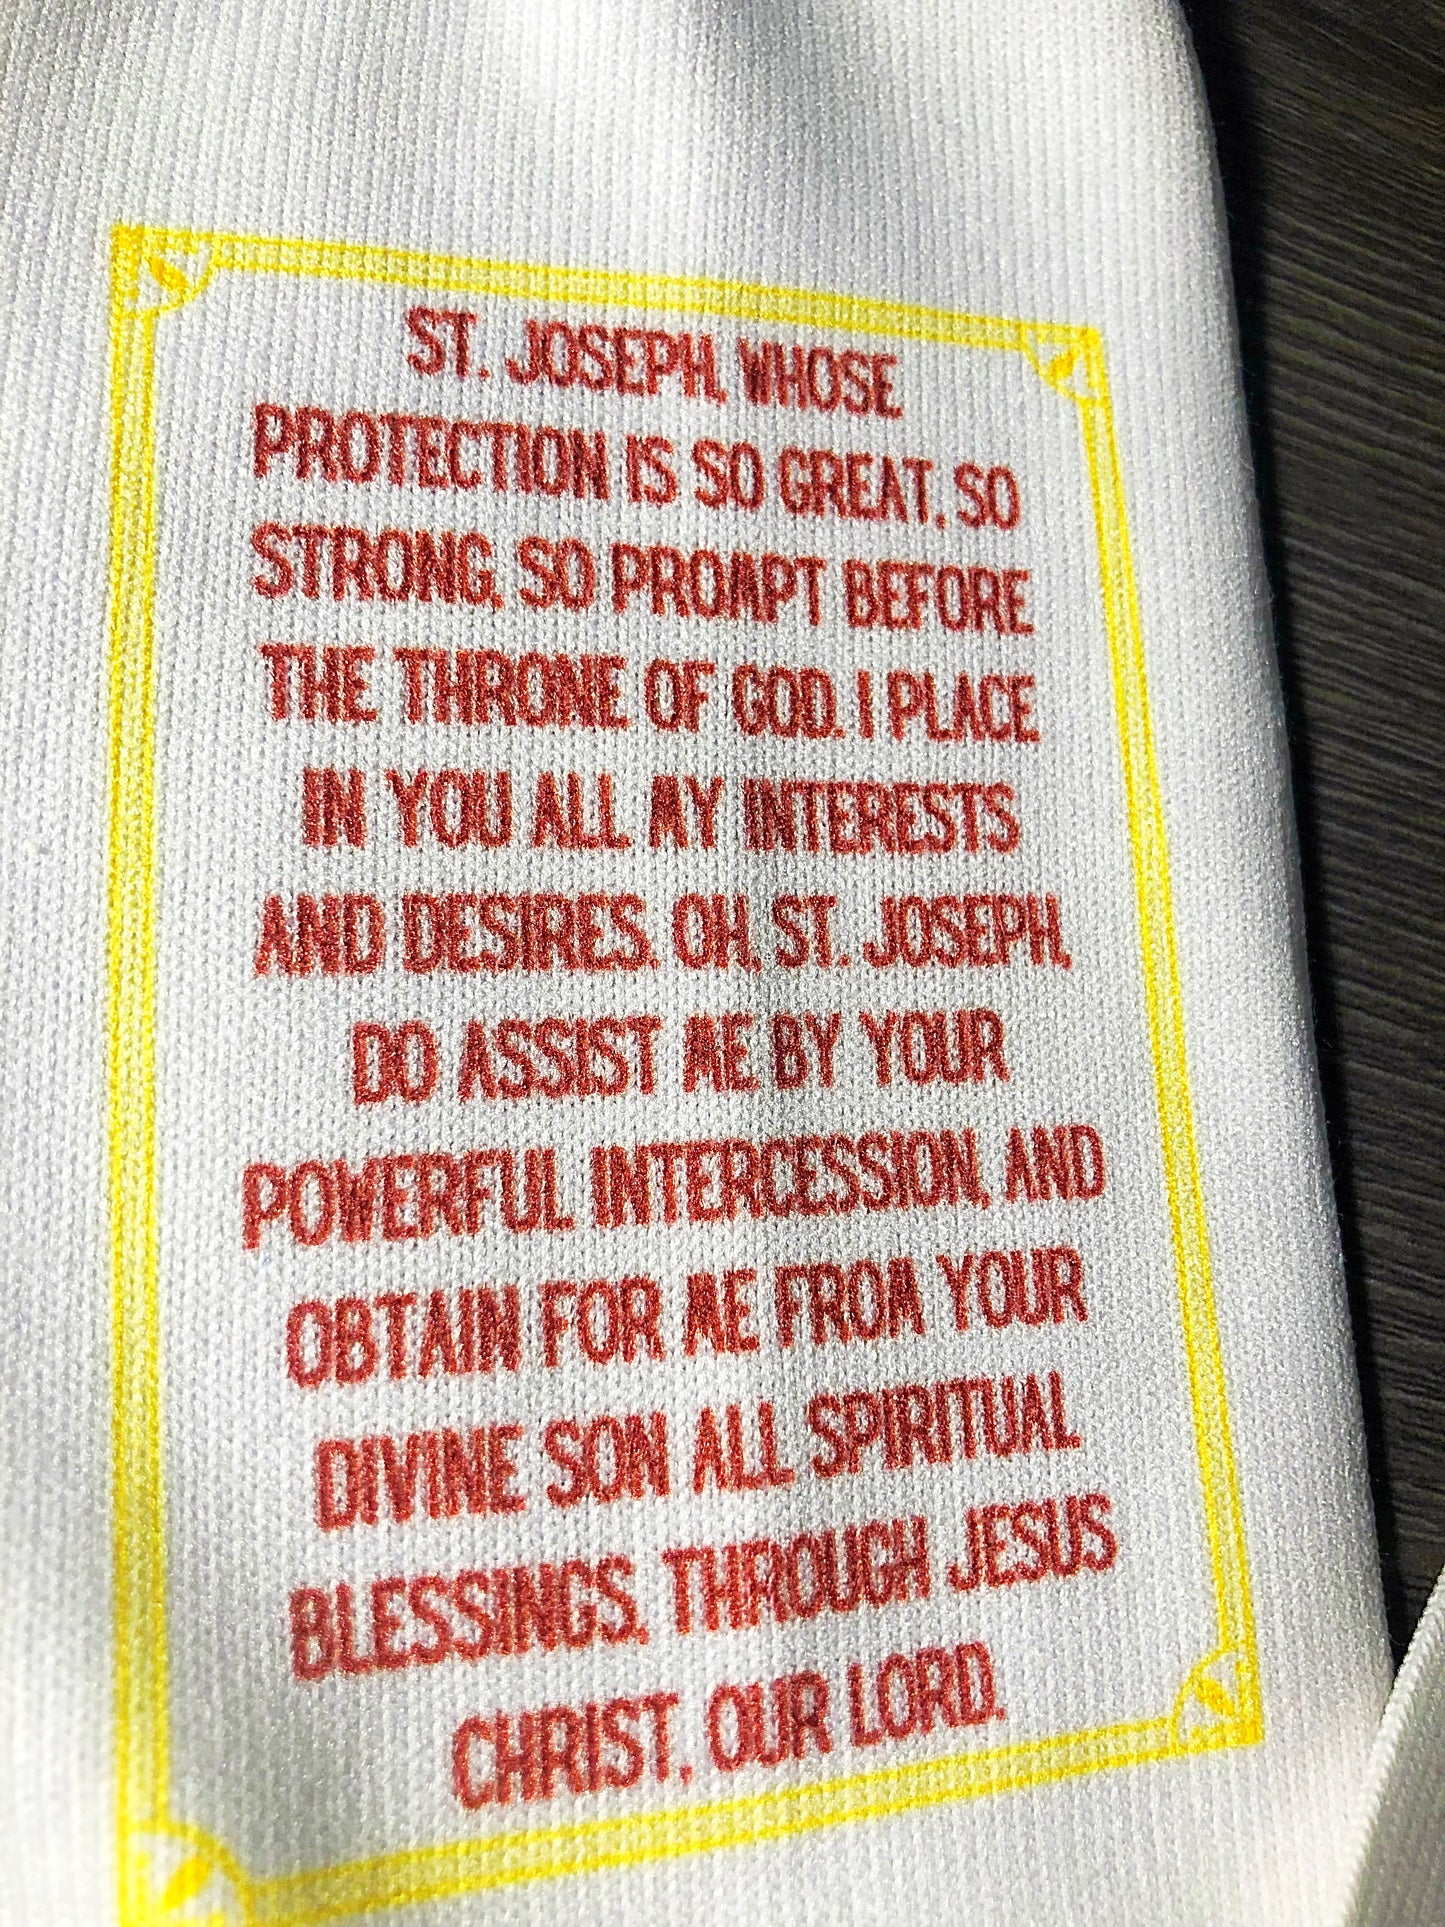 Saint Joseph Men’s socks